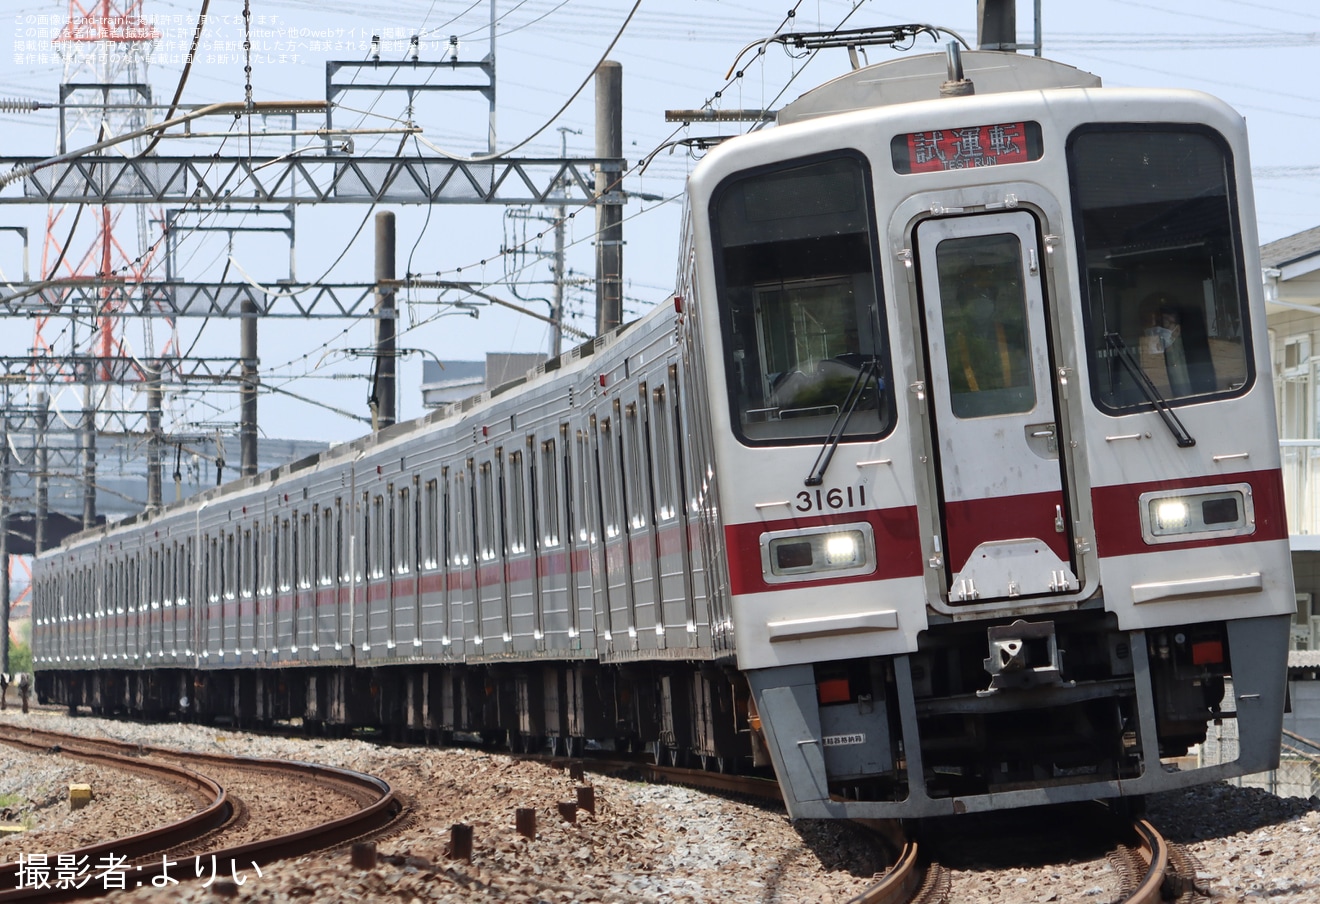 【東武】30000系31611F+31411Fが東上線で試運転の拡大写真